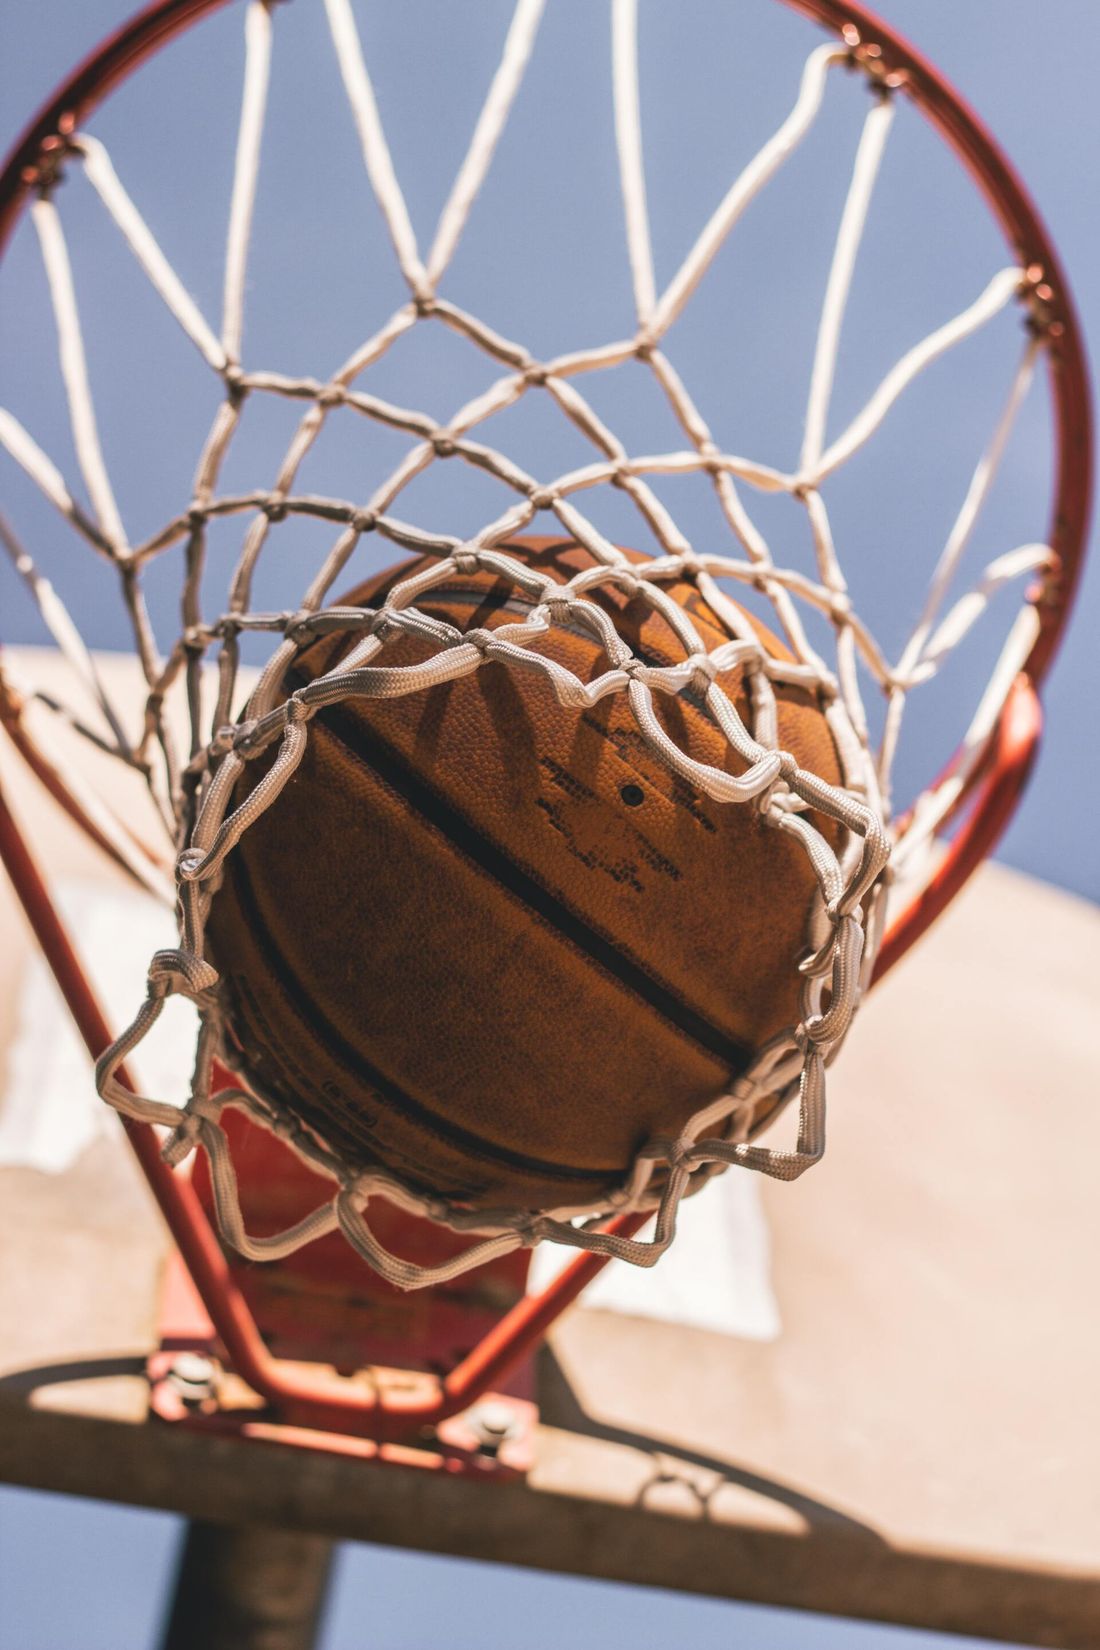 a basketball going through a hoop